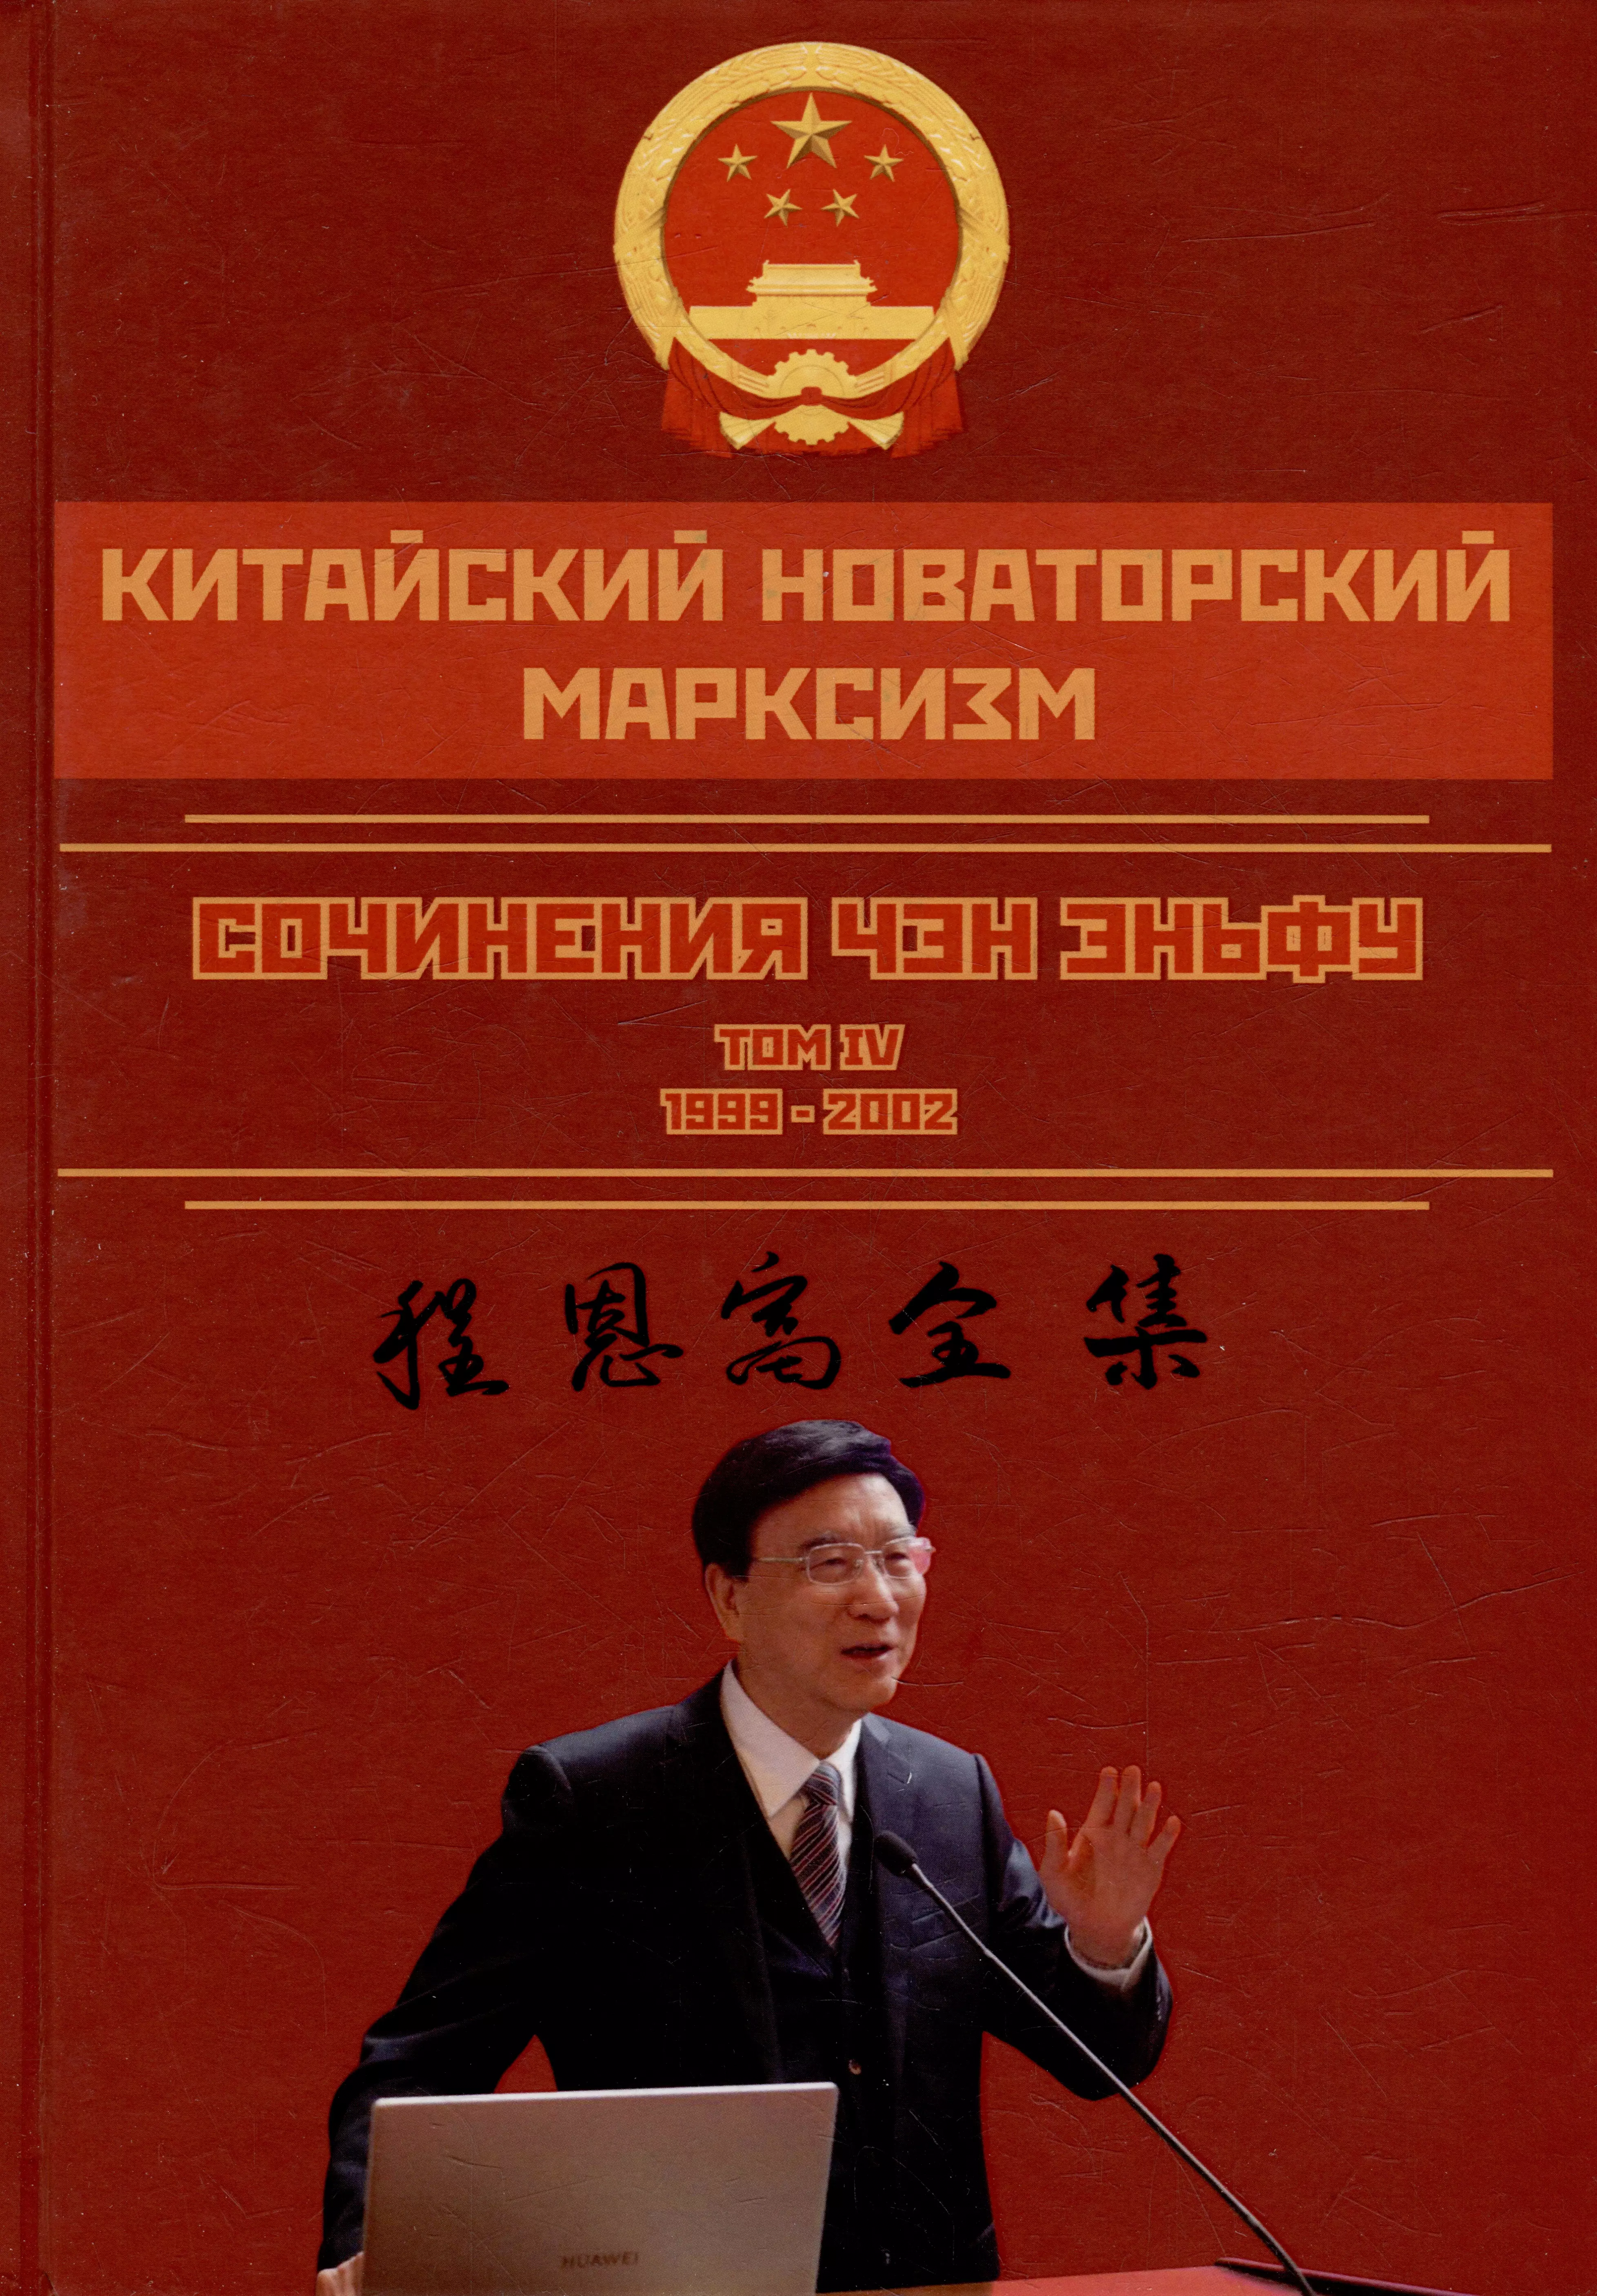 Китайский новаторский марксизм. Сочинения Чэн Эньфу. Том 4. 1999-2002 эньфу чен китайский новаторский марксизм избранные произведения